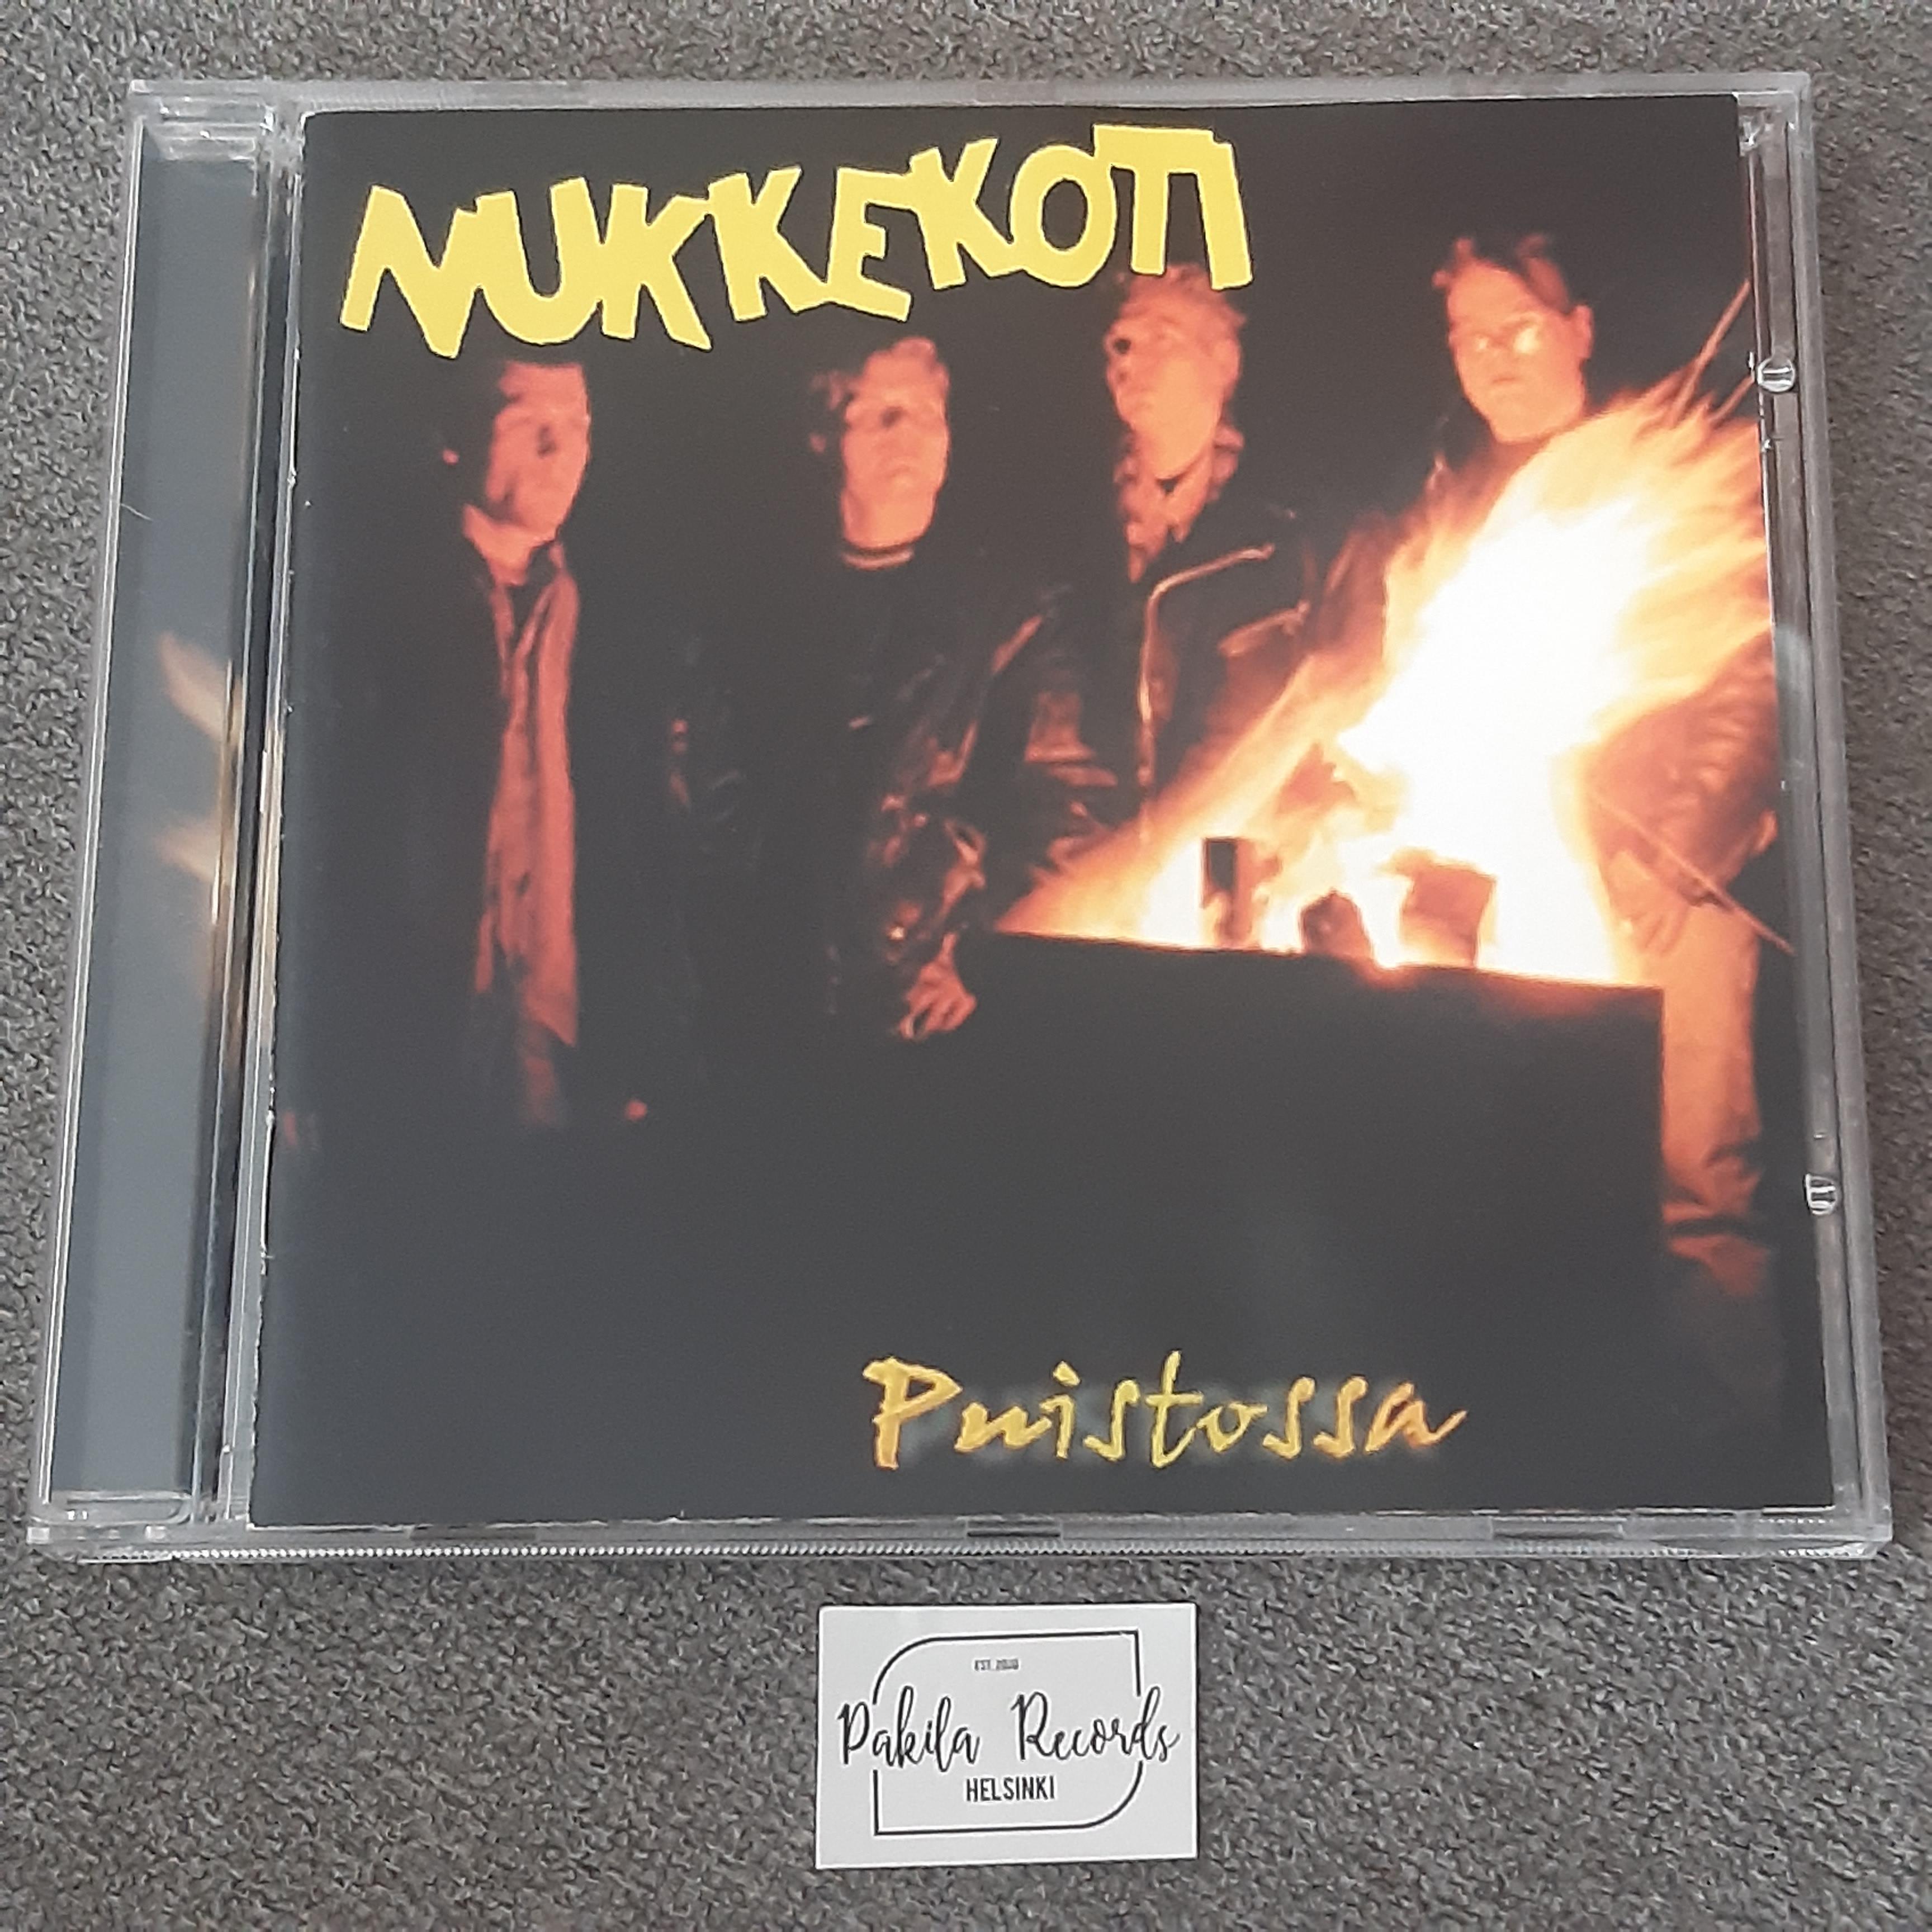 Nukkekoti - Puistossa - CD (käytetty)